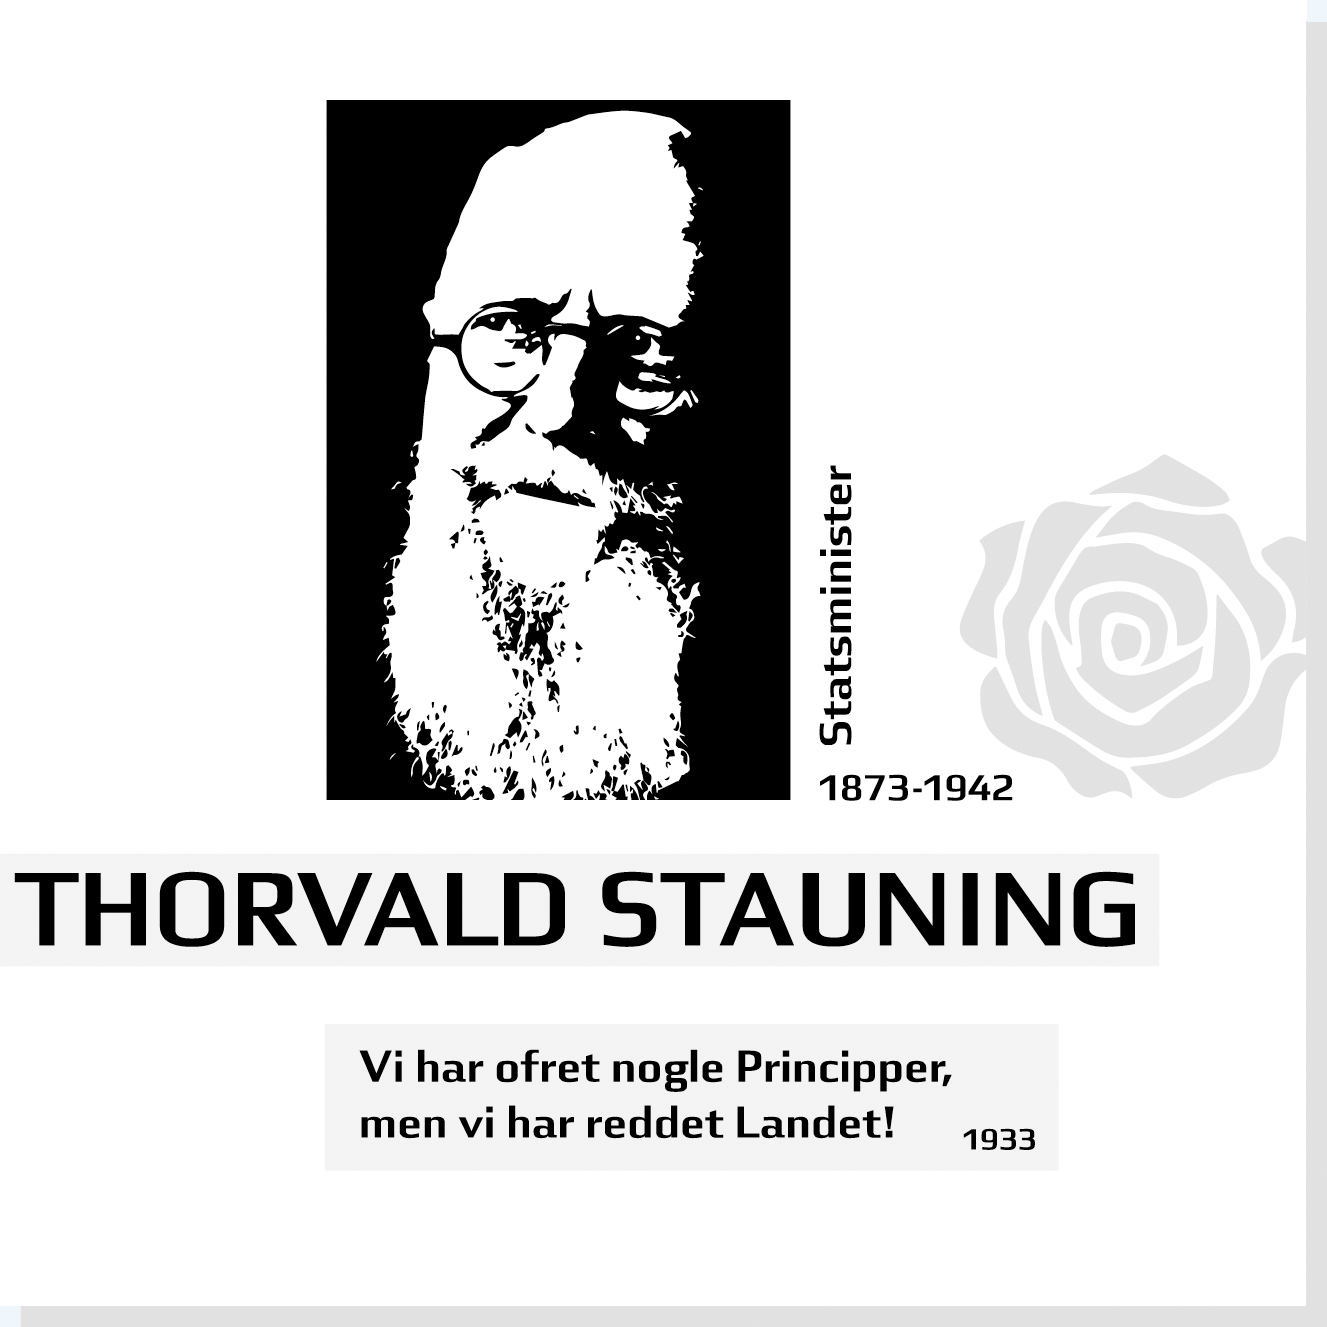 Thorvald Stauning er en af Rysensteens 22 udvalgte danske dannelsespersoner